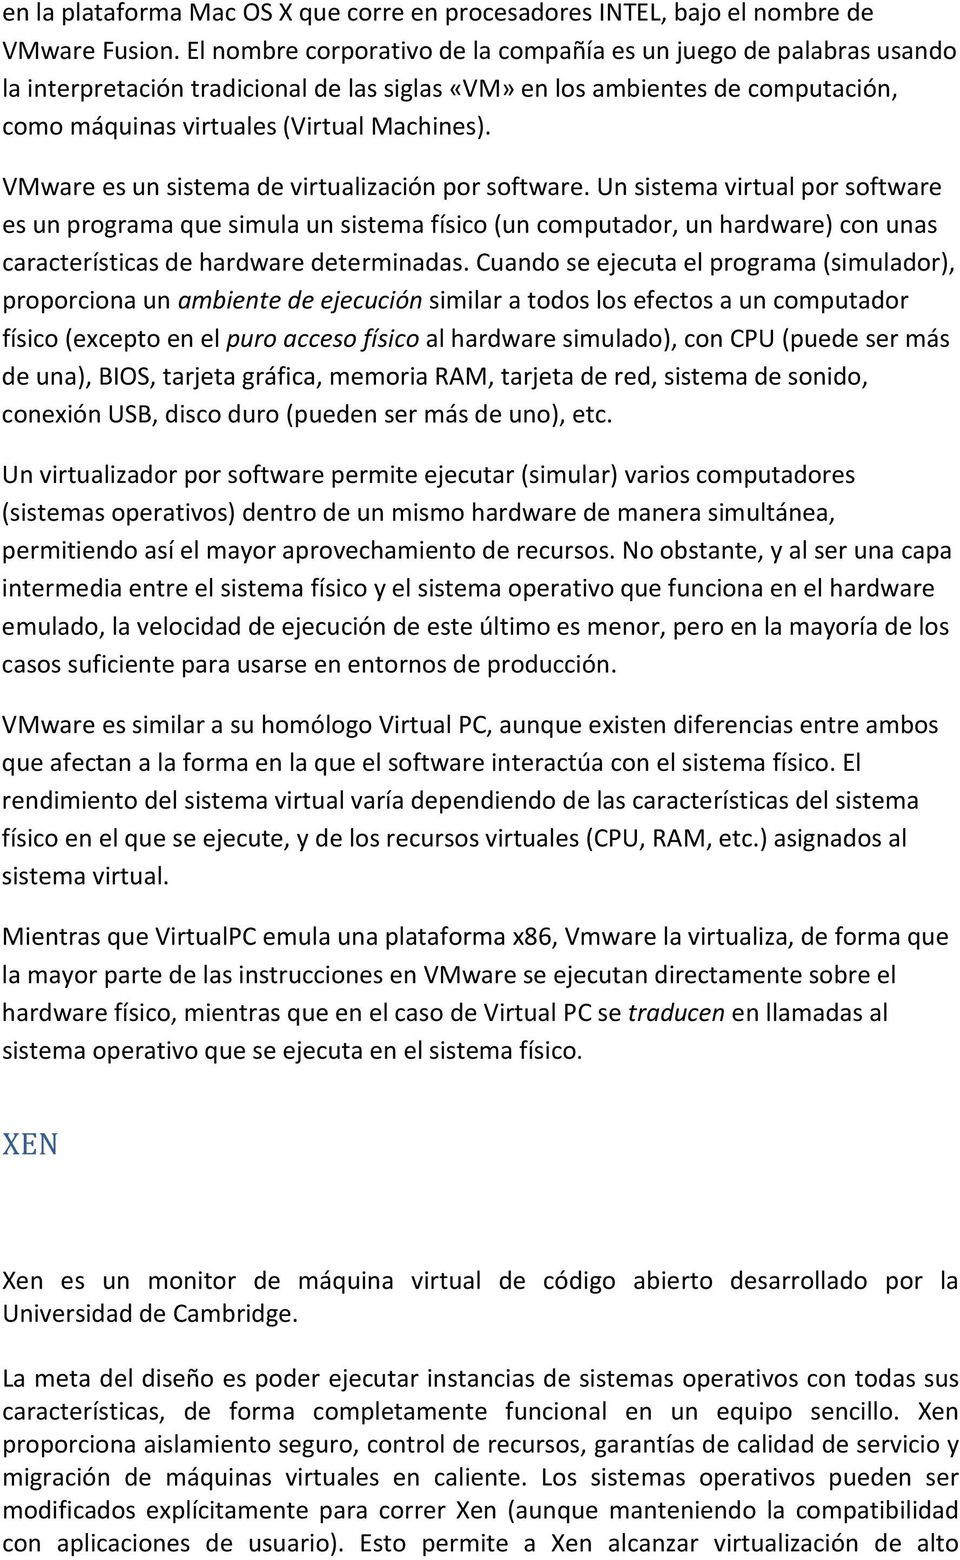 VMware es un sistema de virtualización por software.